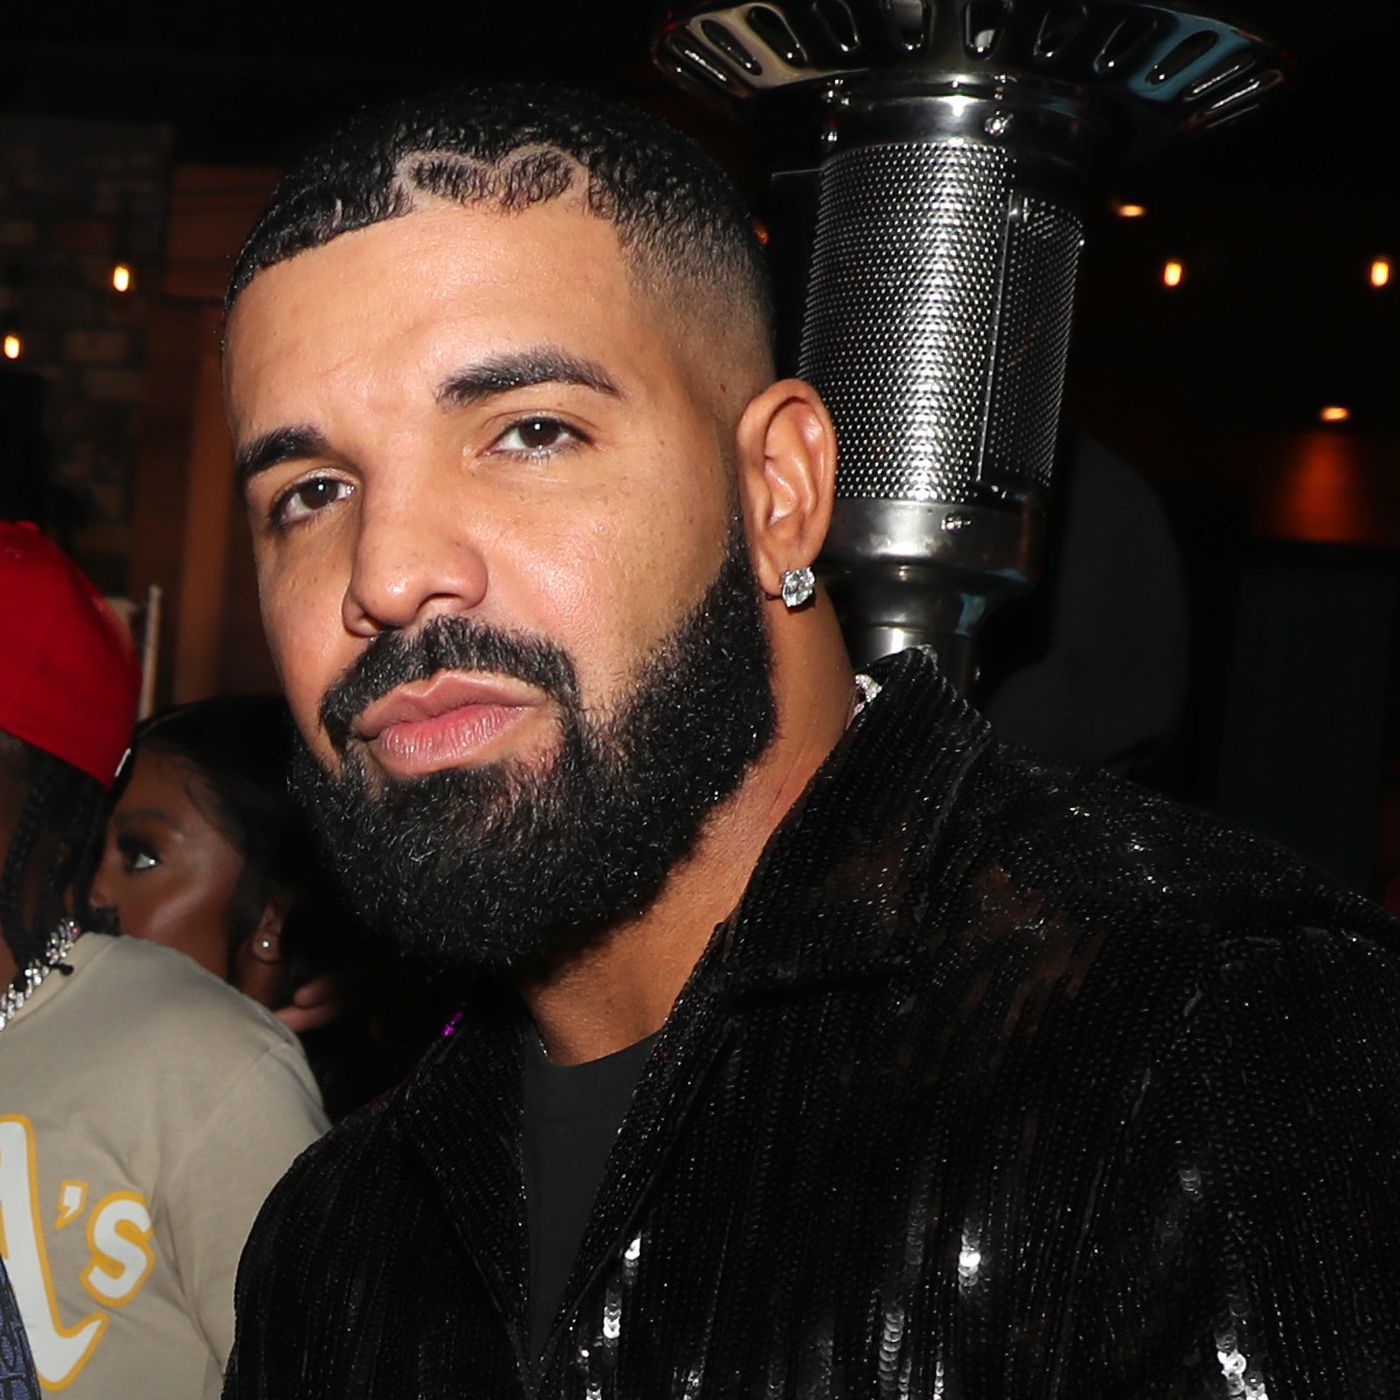 Muere el rapero estadounidense Drake